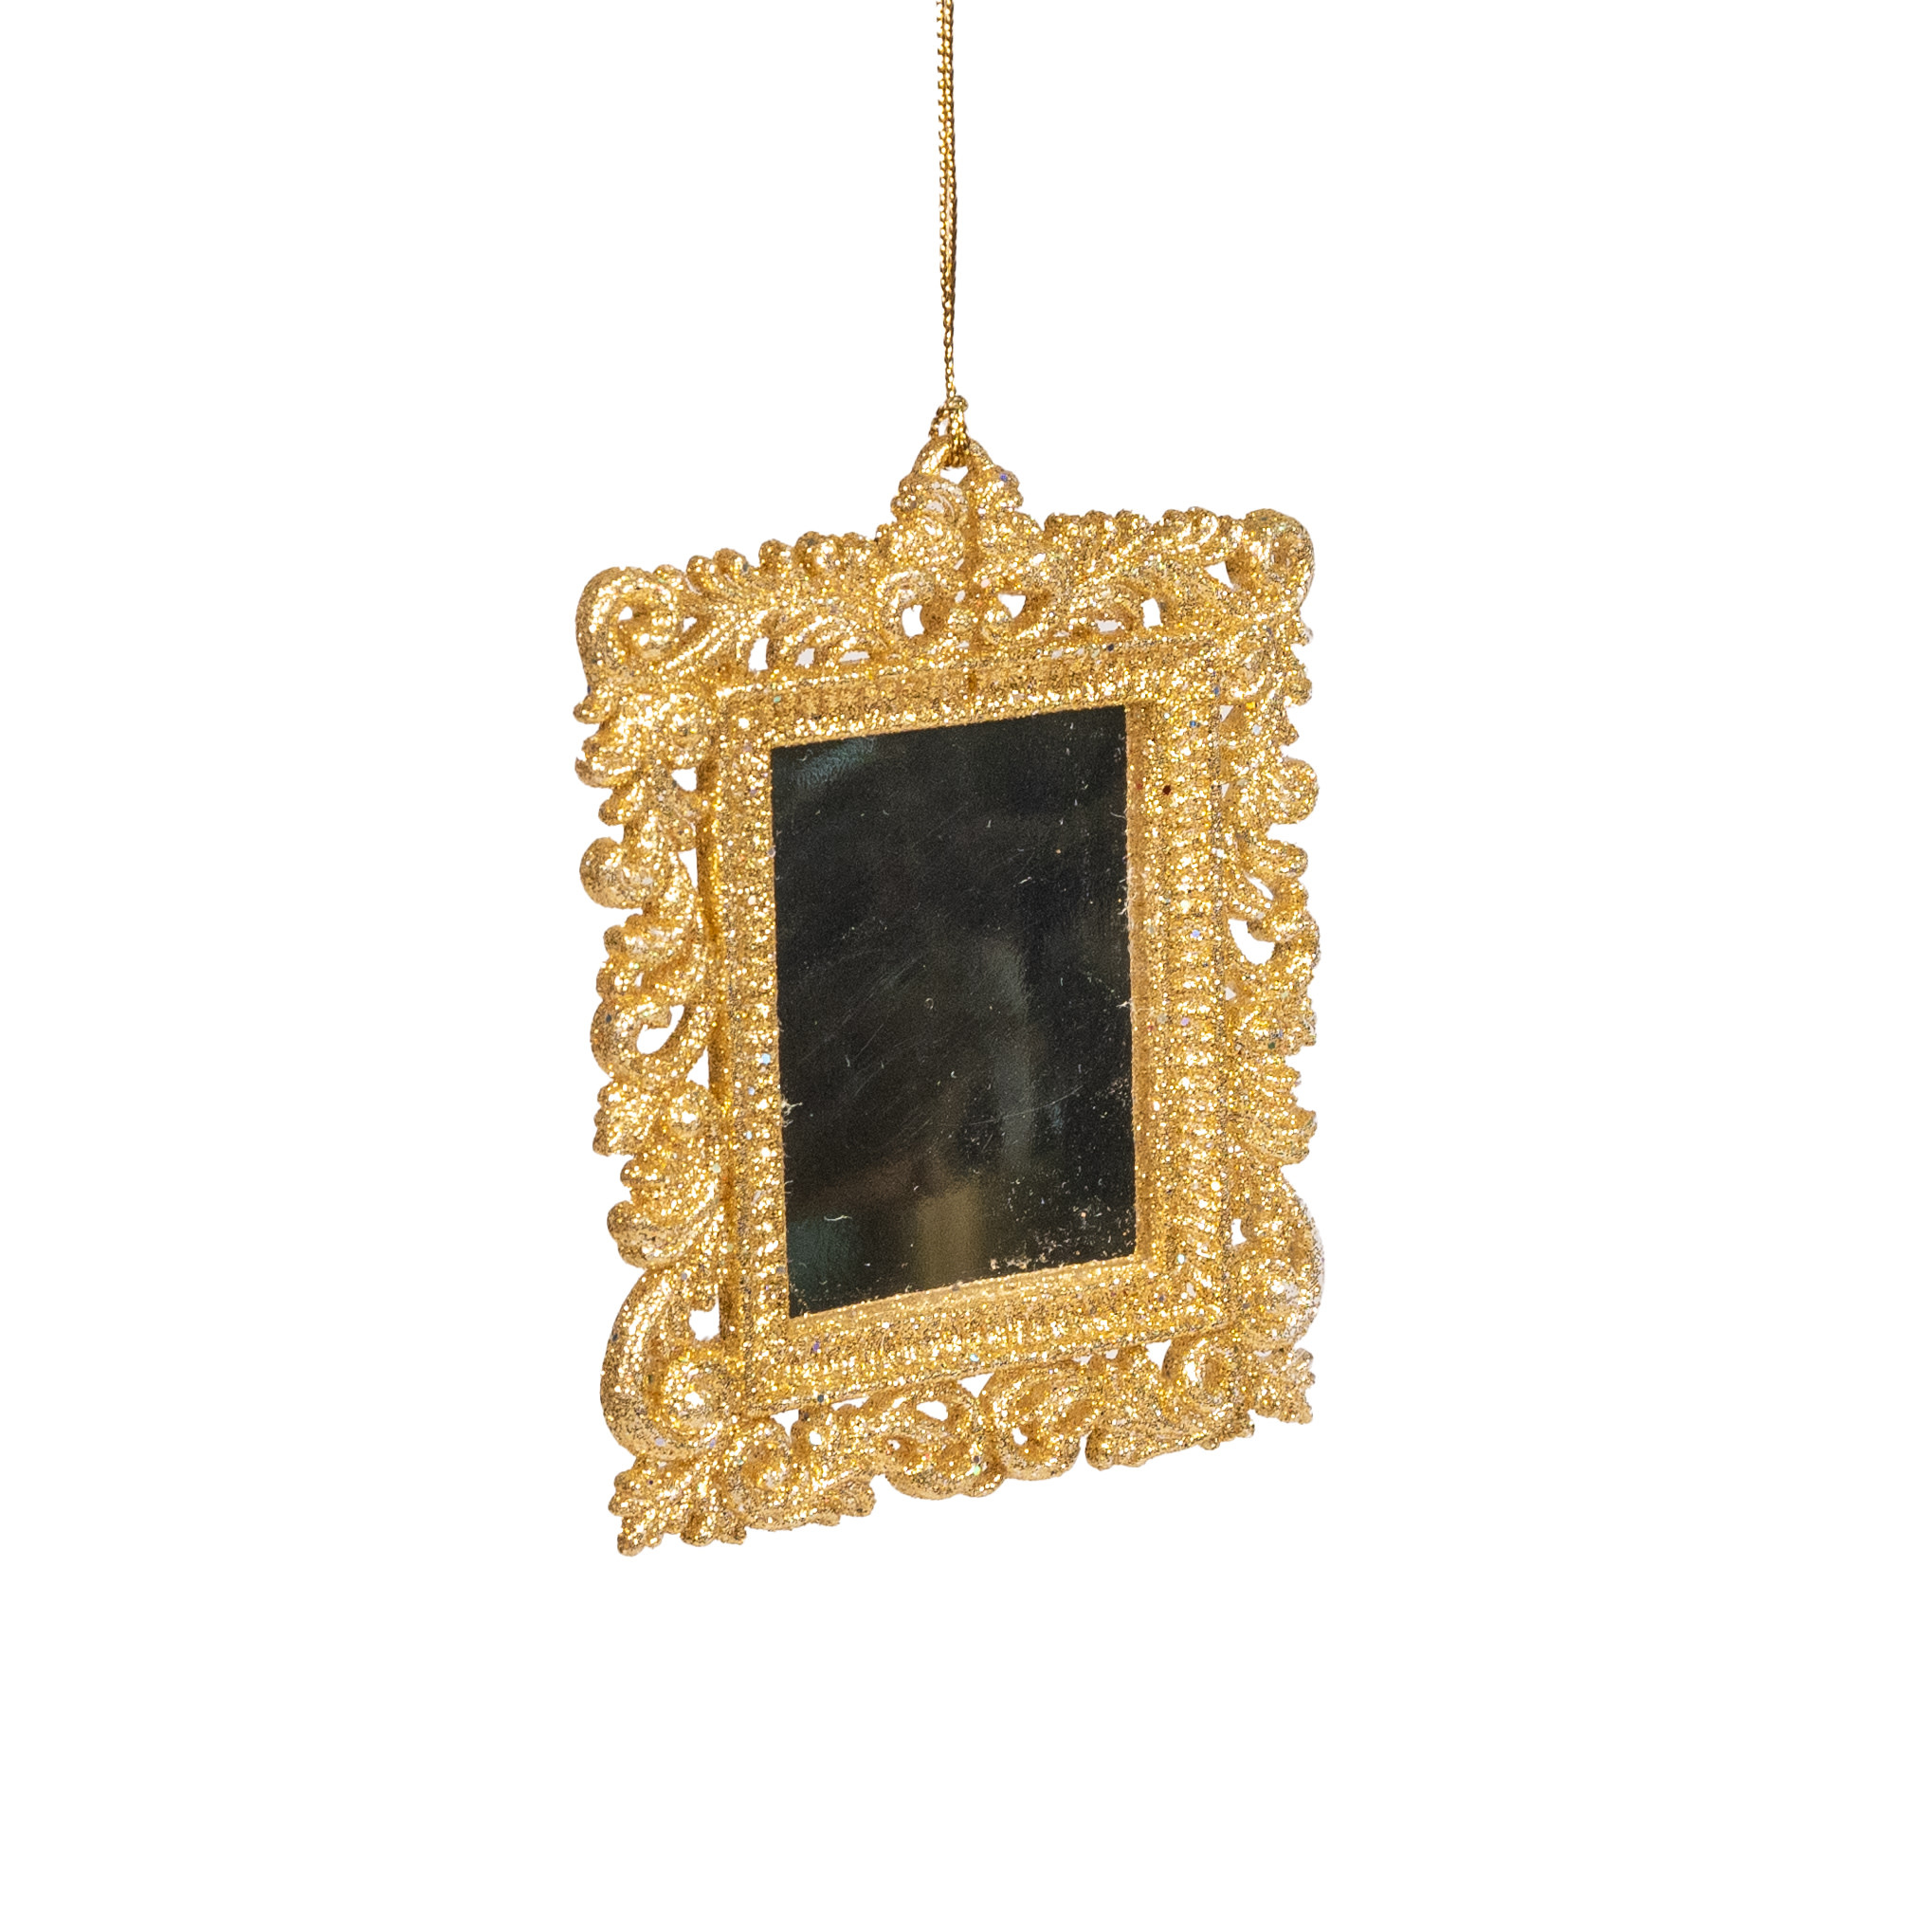 Glittered Mirror Ornament - 4"